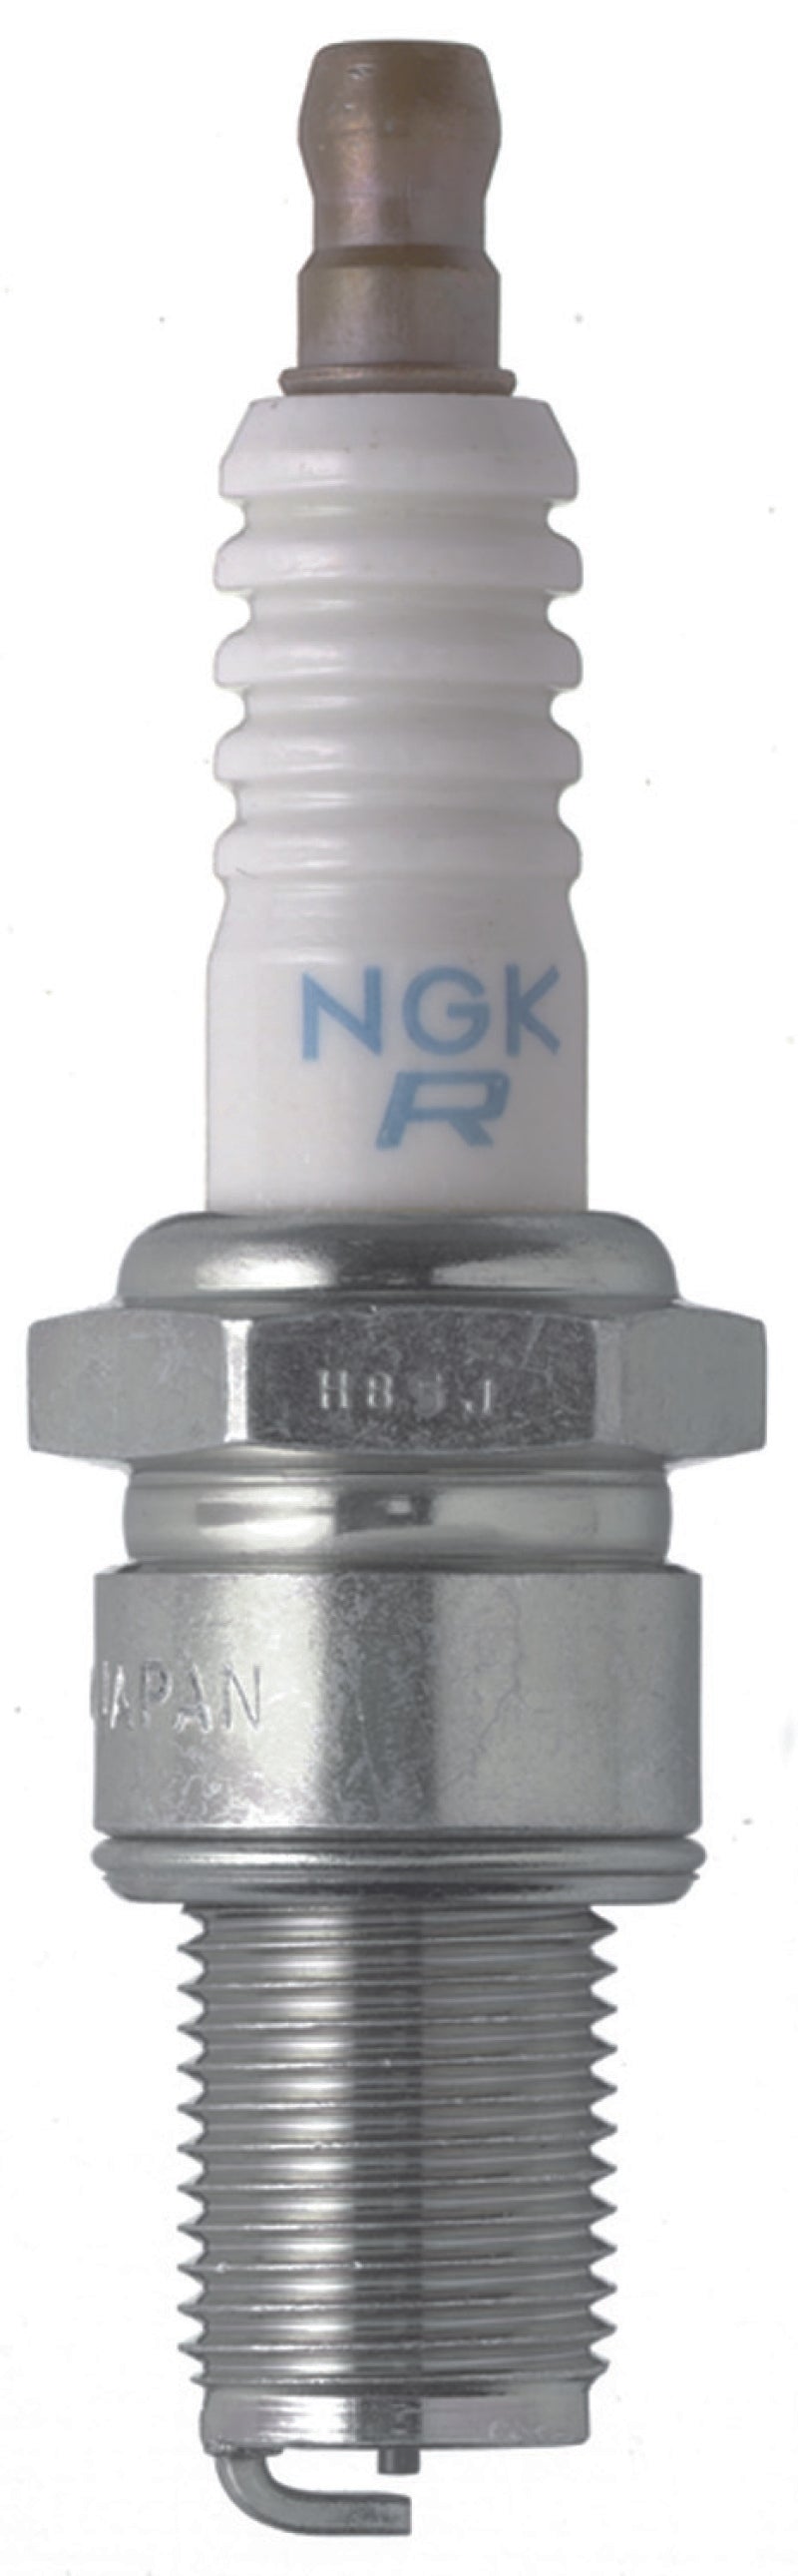 NGK Racing Spark Plug Box of 4 (BR8EG SOLID)